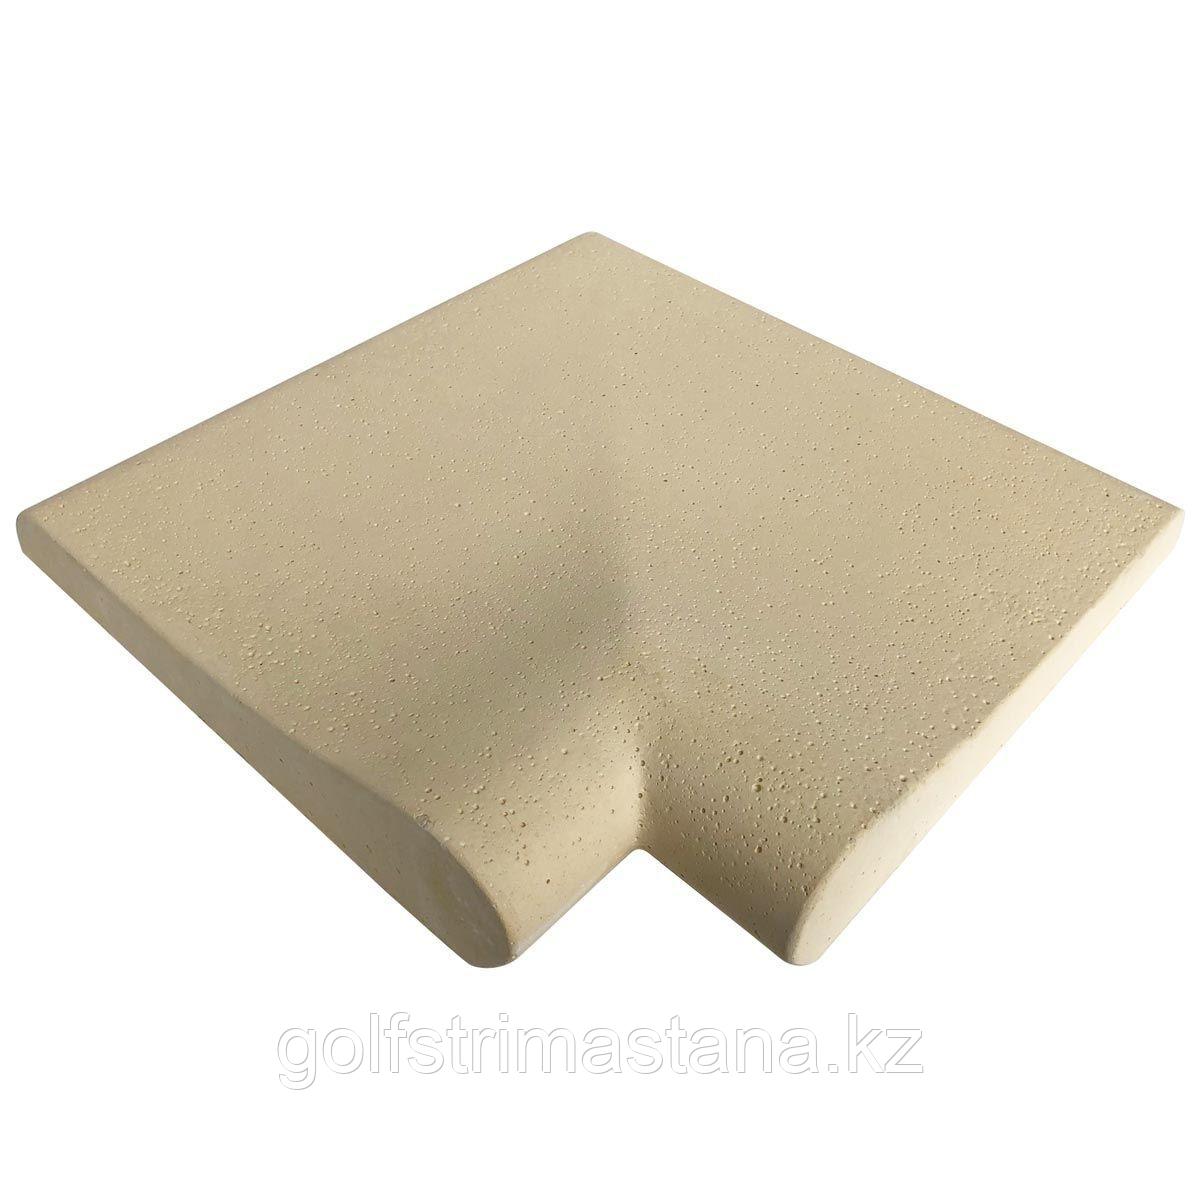 Копинговый камень (39x39х3-7 см) Carobbio Standard гладкий, песочный